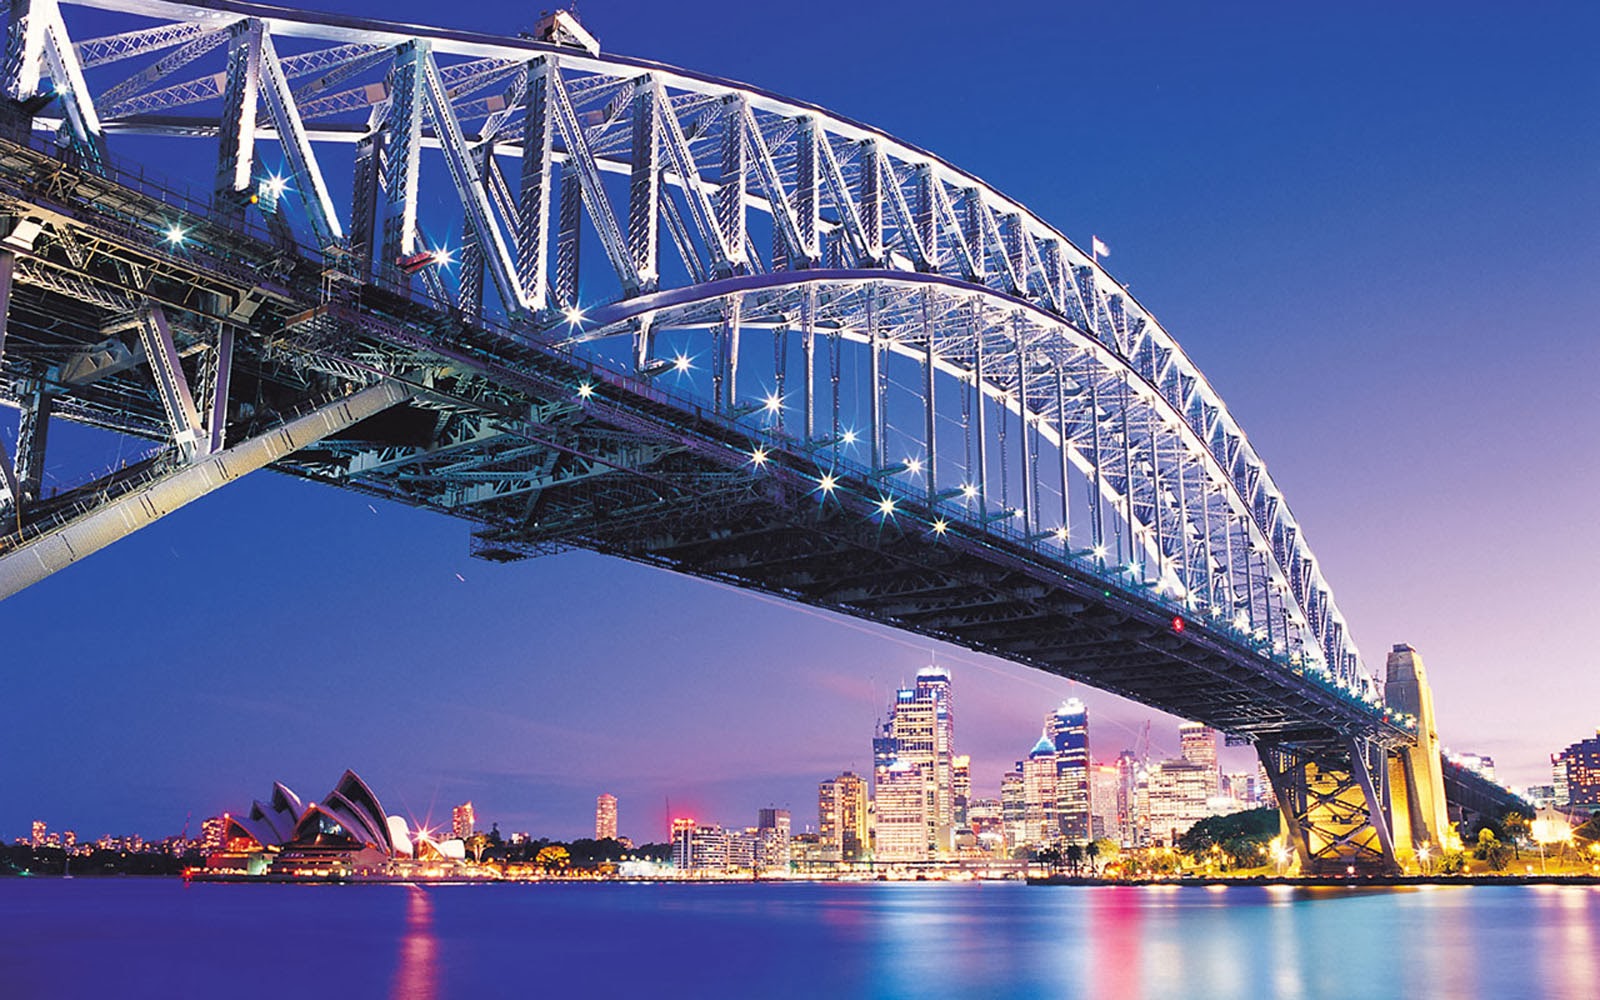 2019悉尼海港大桥_旅游攻略_门票_地址_游记点评,悉尼旅游景点推荐 - 去哪儿攻略社区